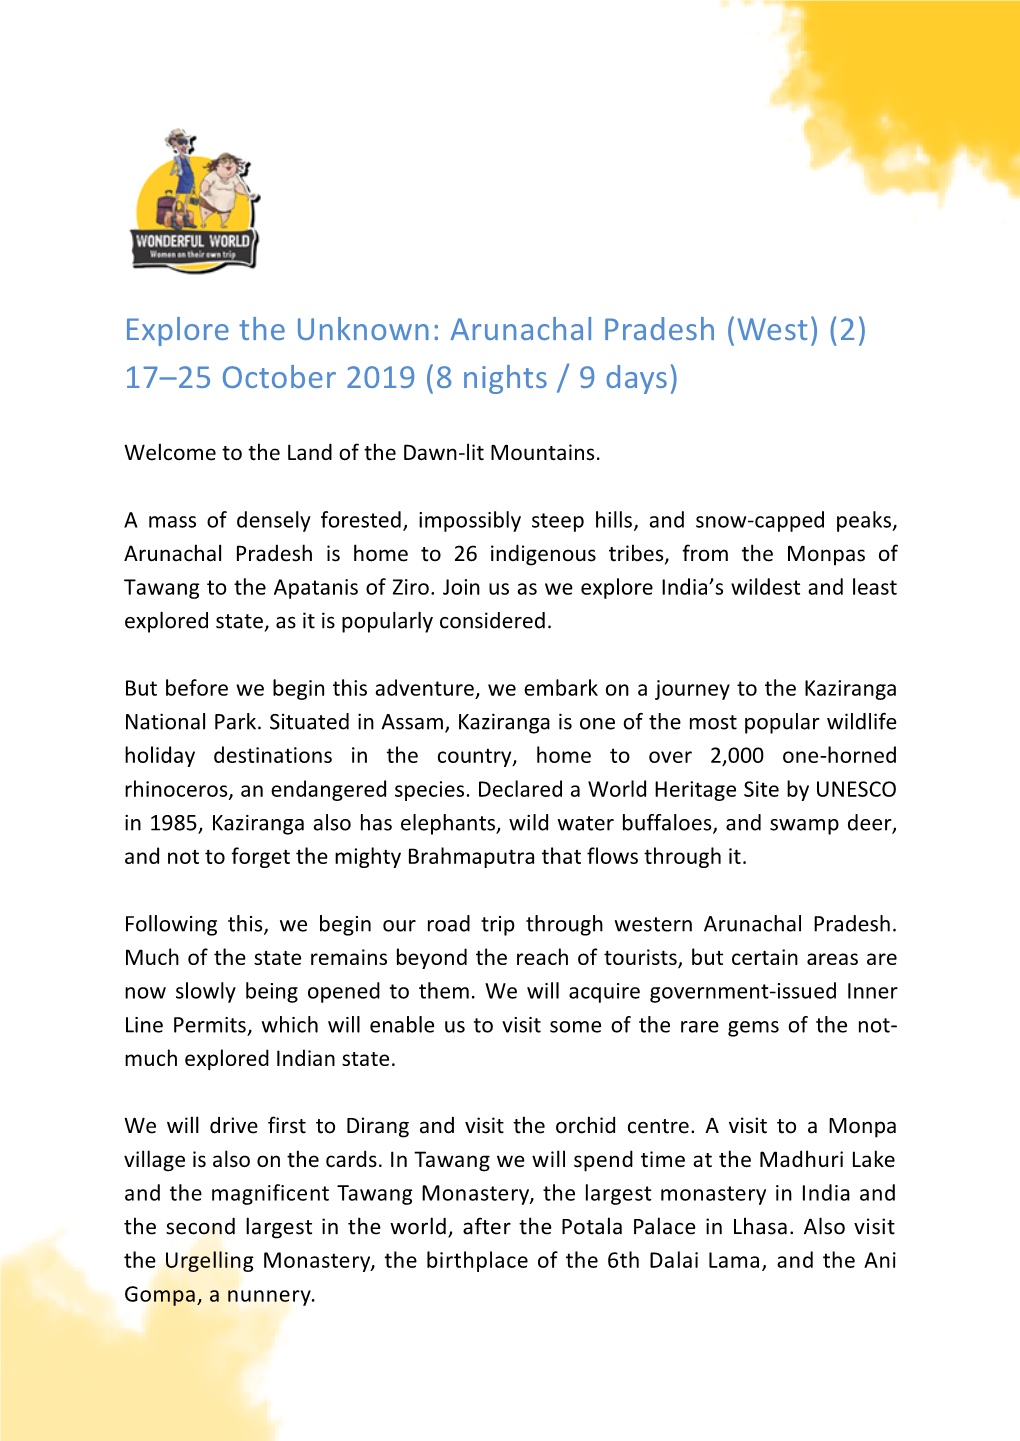 Arunachal Pradesh (West) (2) 17–25 October 2019 (8 Nights / 9 Days)